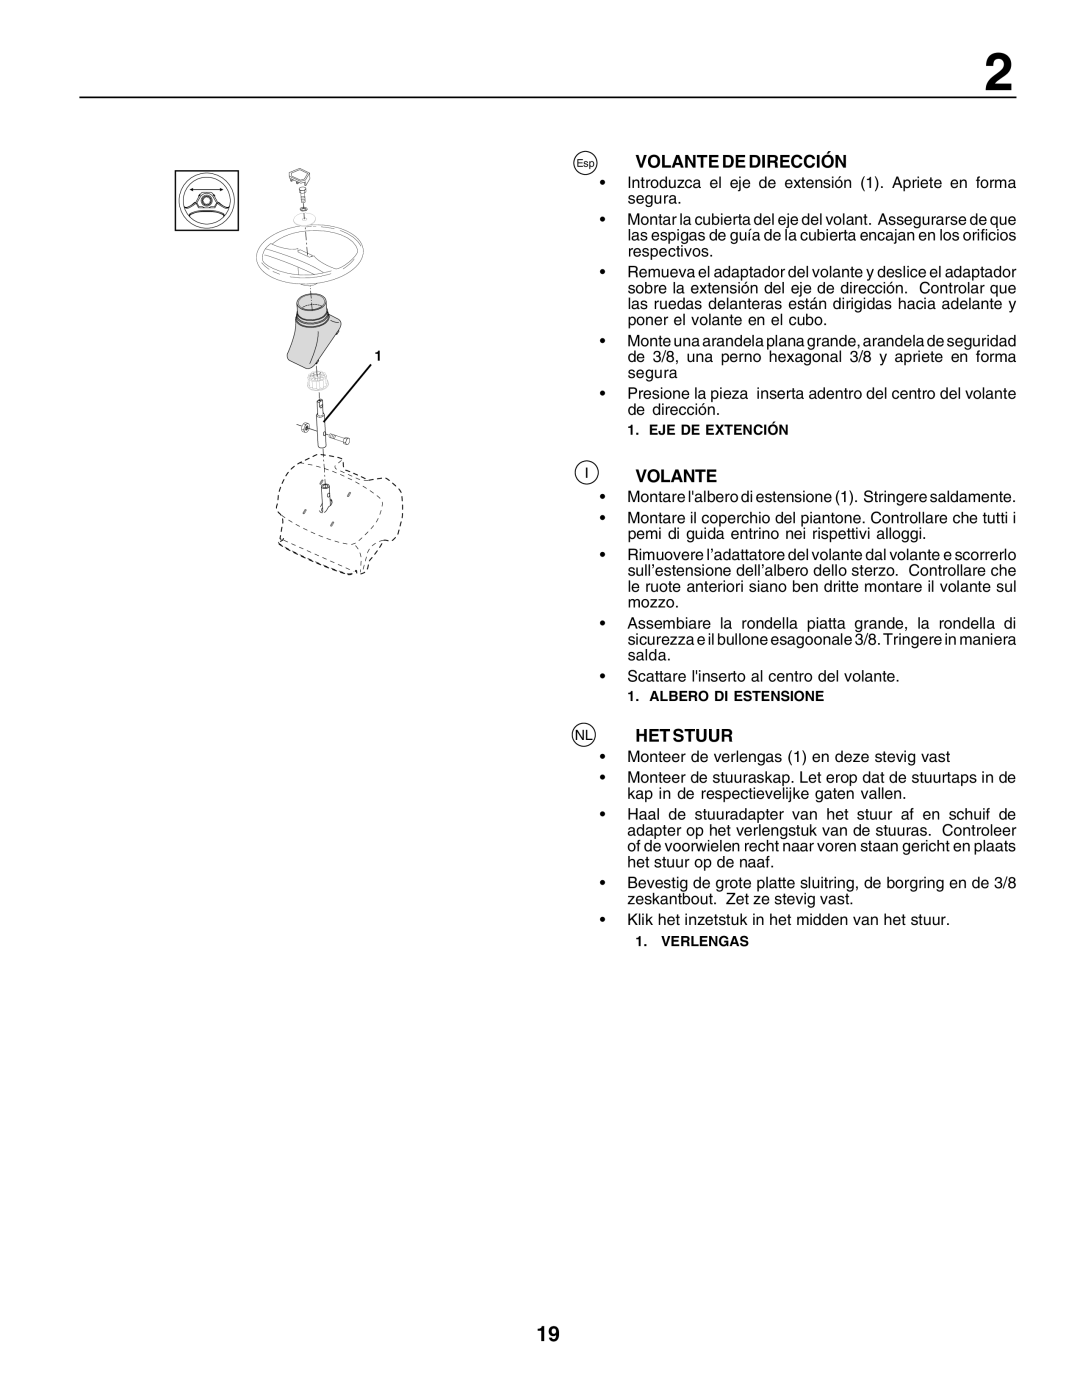 Husqvarna LT125 instruction manual Volante De Dirección, Nl Het Stuur, Eje De Extención, Albero Di Estensione, Verlengas 